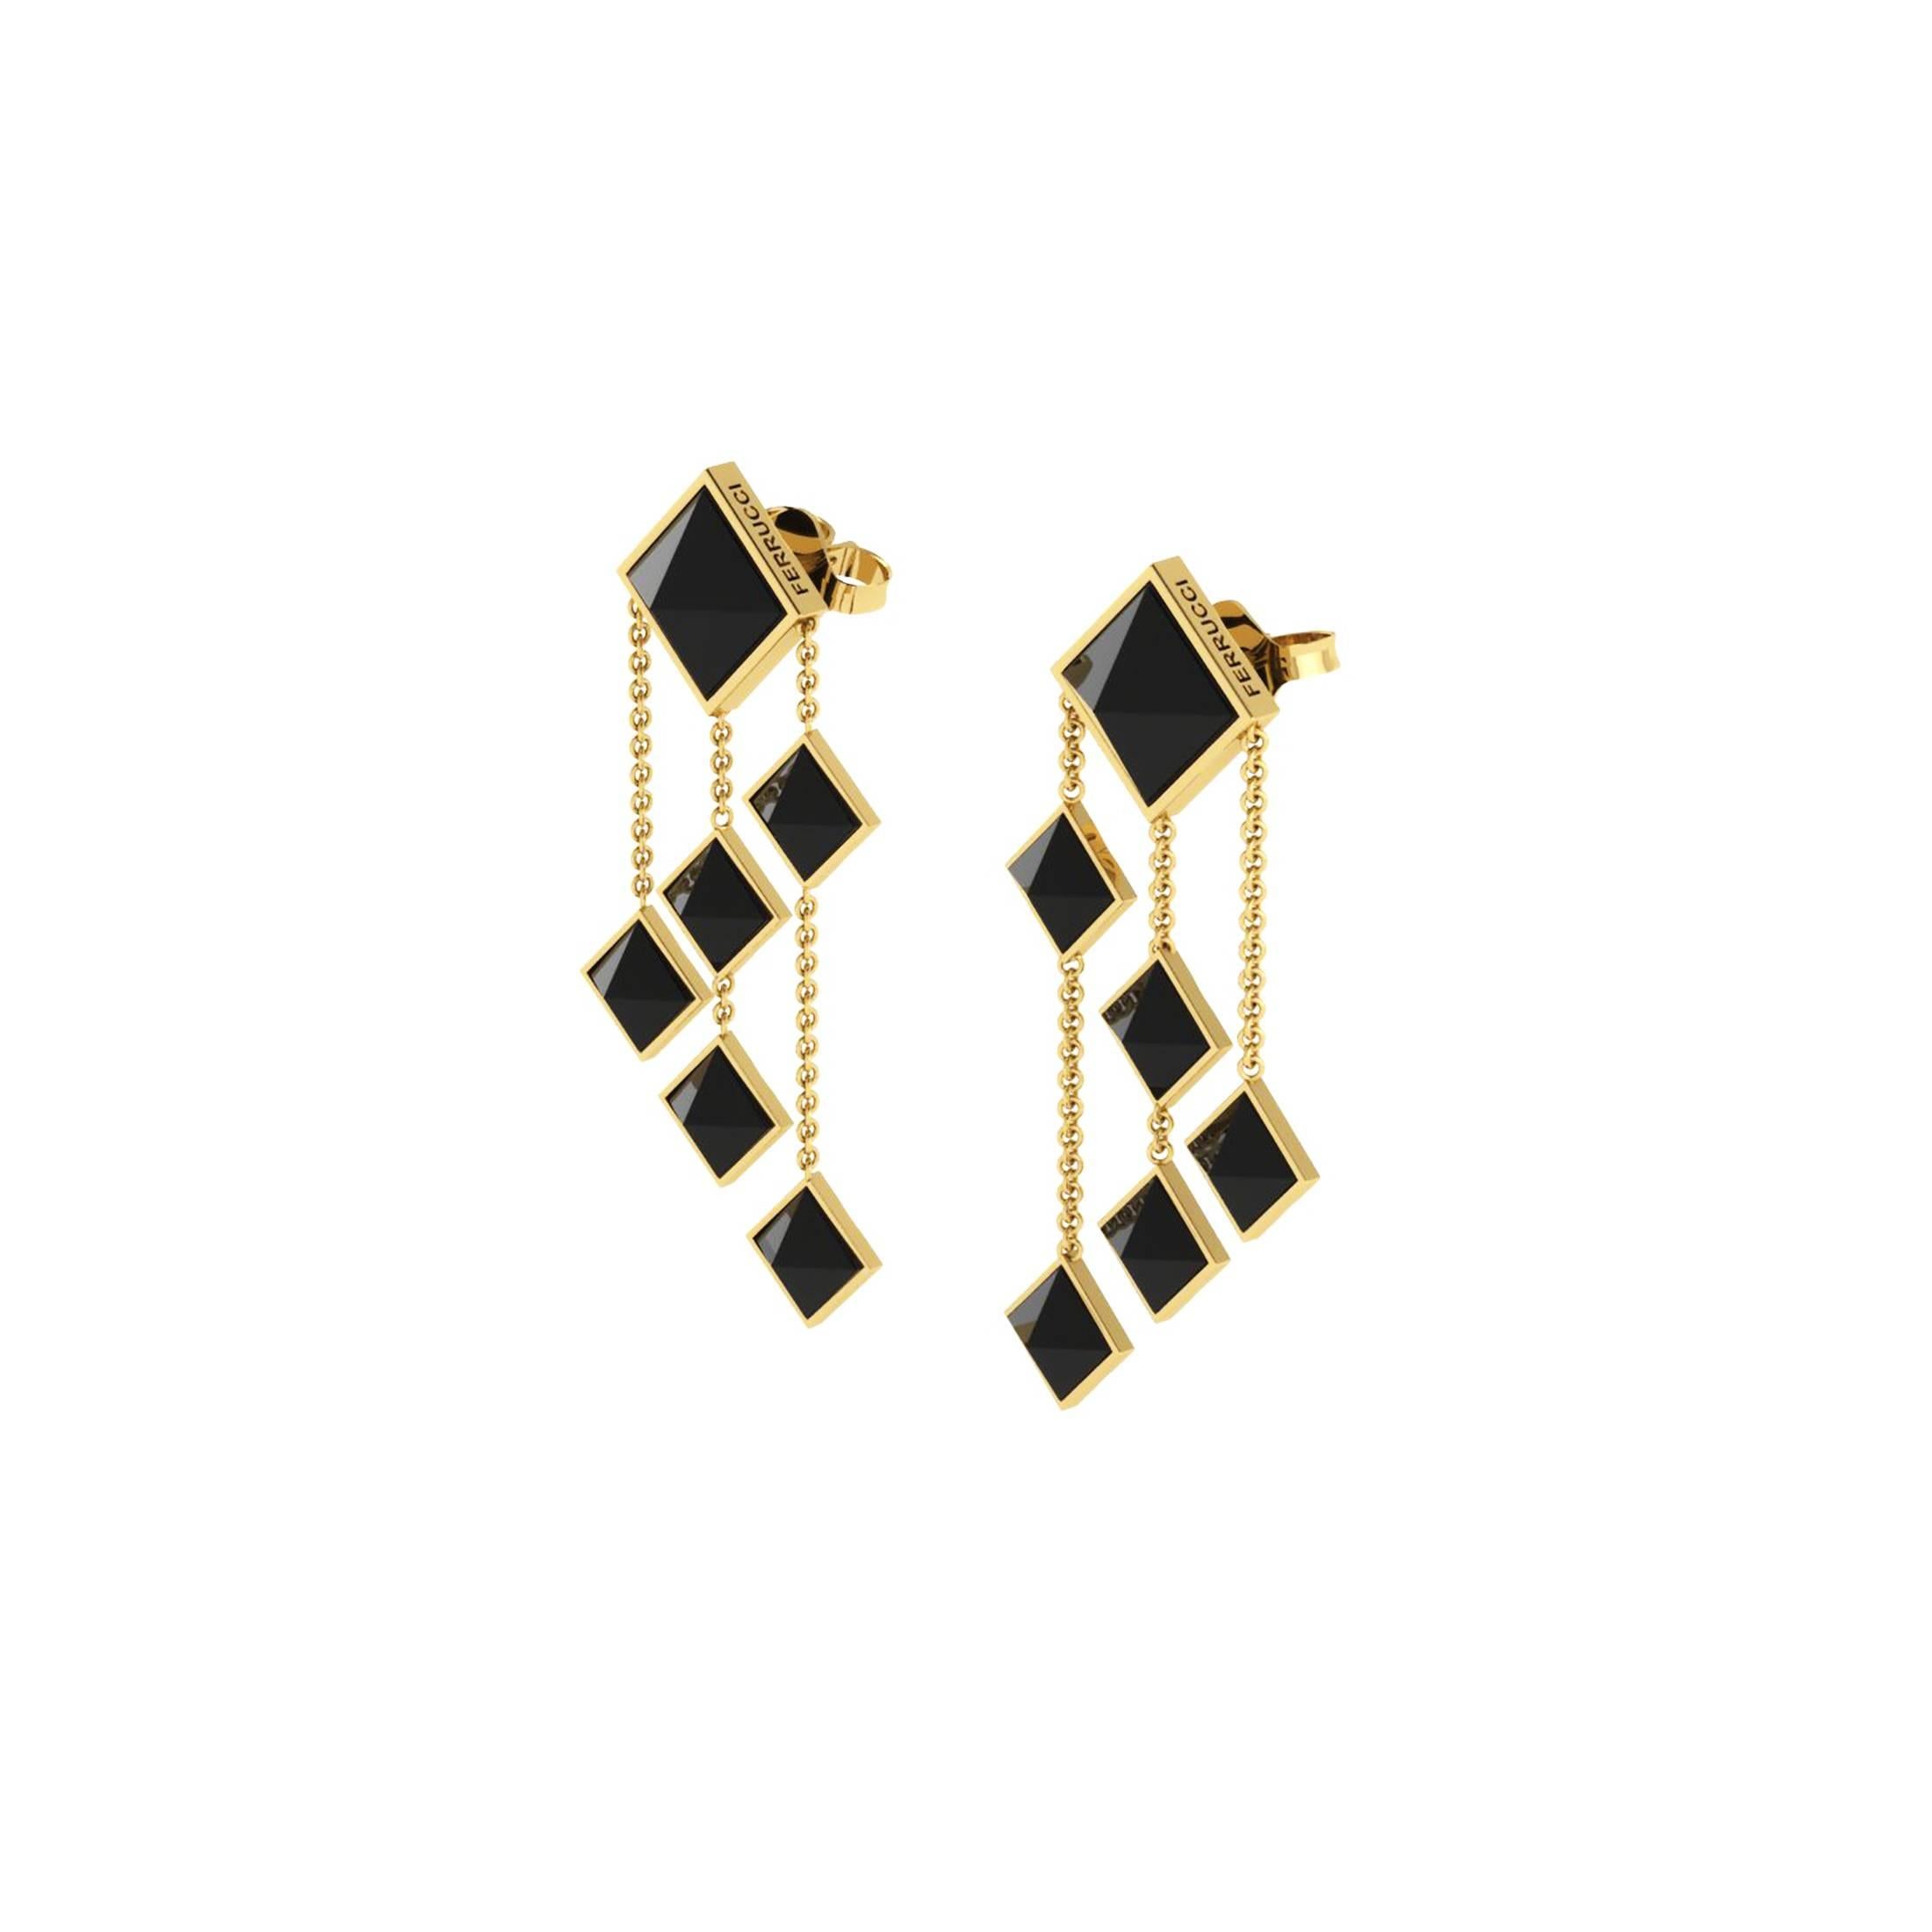 Von FERRUCCI Pyramids Sammlung, diese schwarzen Onyx Pyramidenschliffe, in 18k Gelbgold baumeln Ohrringe, handgefertigt in New York City von italienischen Designer Francesco Ferrucci, ein Art Deco inspiriertes Design, elegant und leicht für jeden